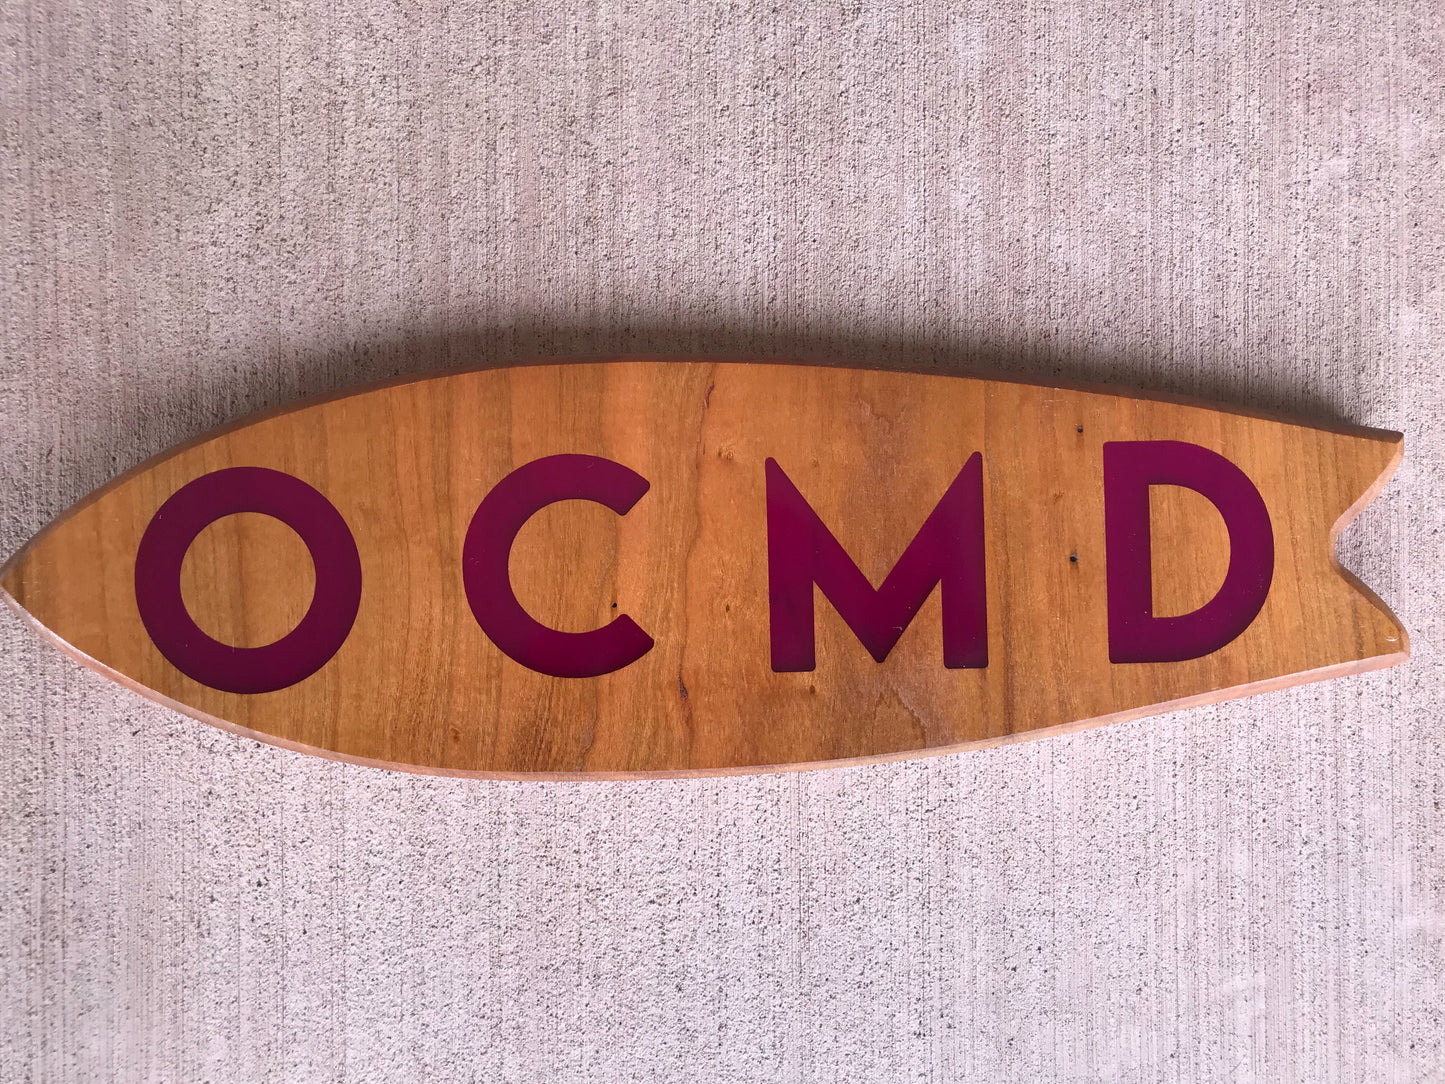 OCMD Surf - Thread & Resin